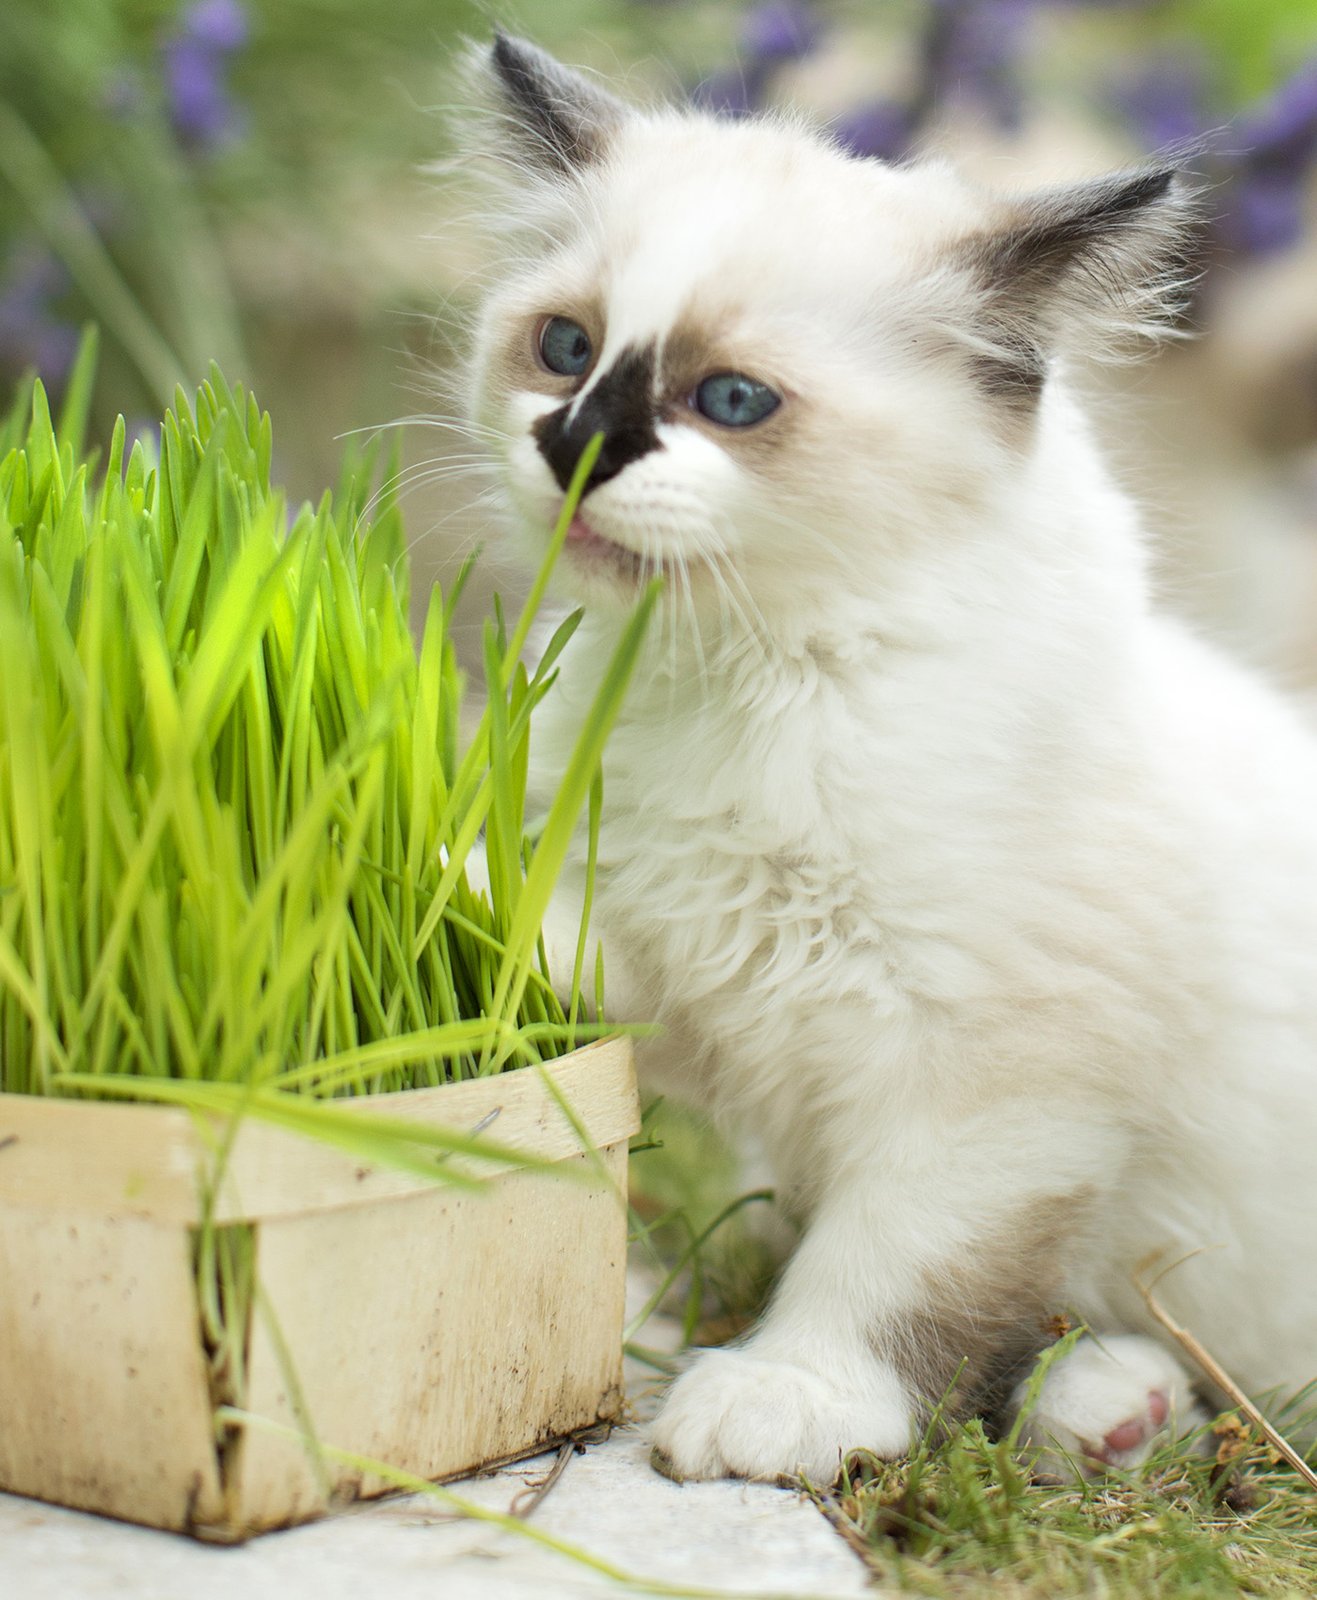 Un chat blanc en train de manger une herbe à chat